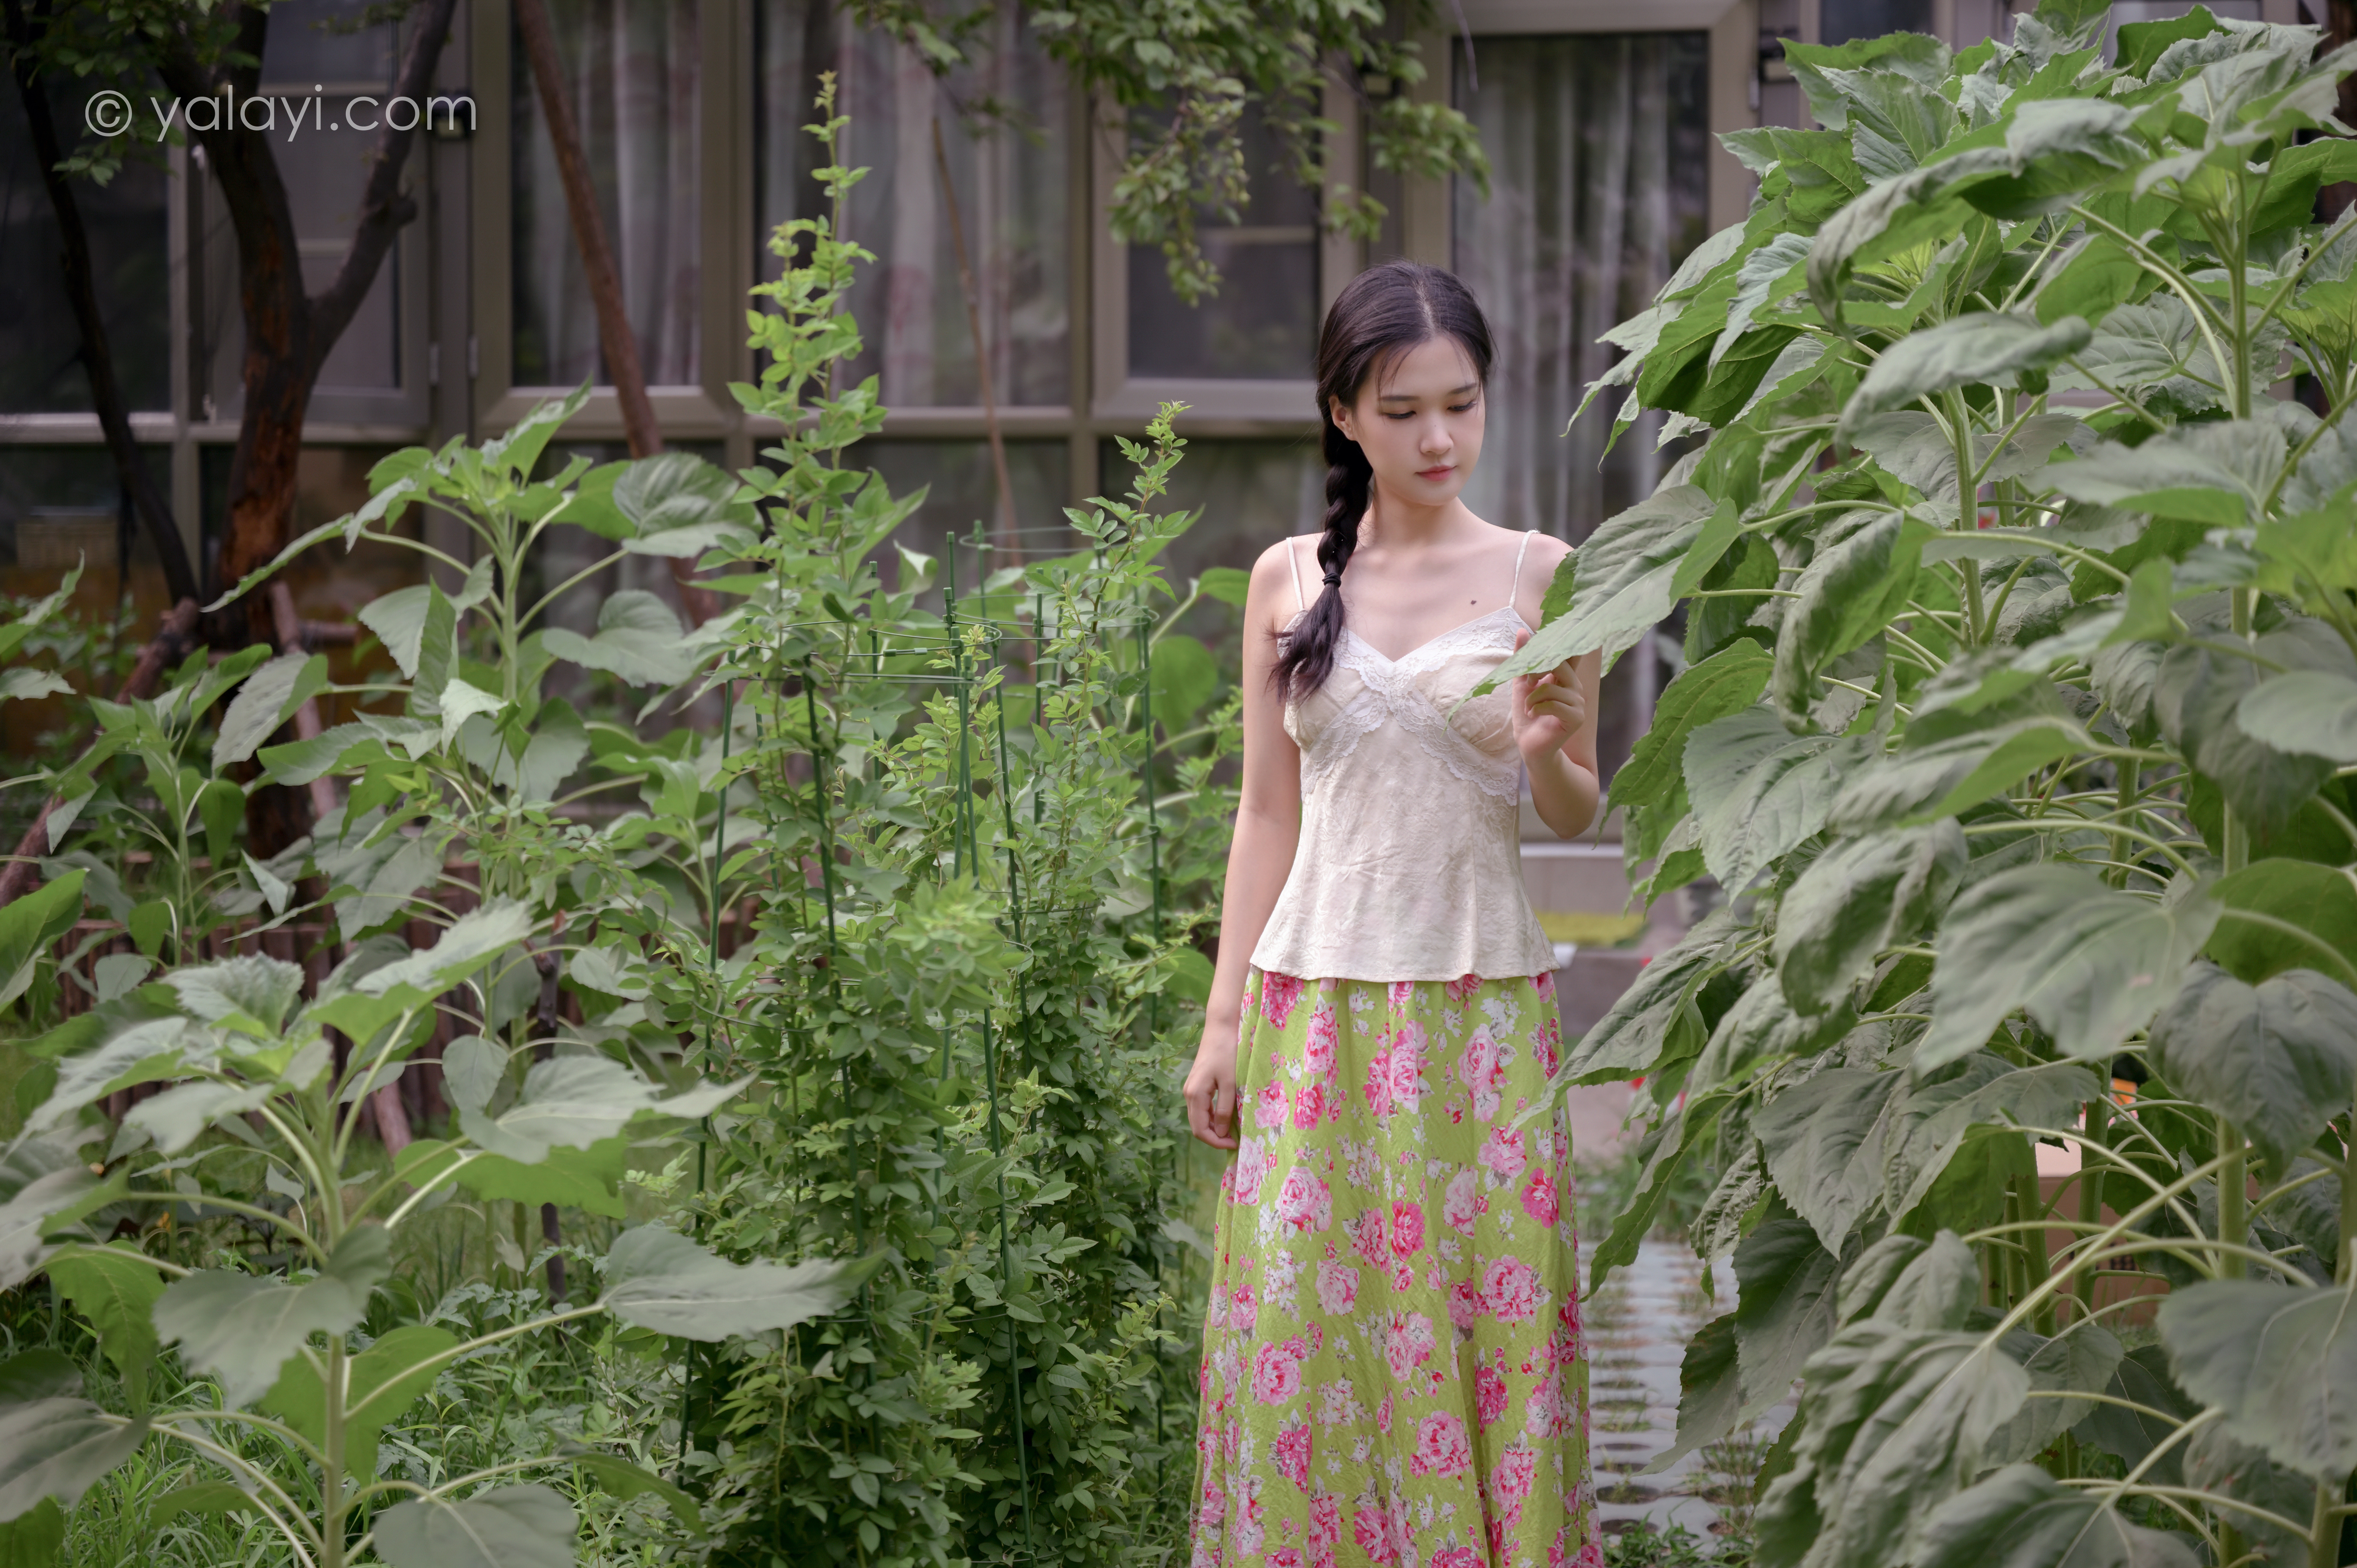 People 6048x4024 hanfu model Asian women yalayi brunette plants garden women outdoors